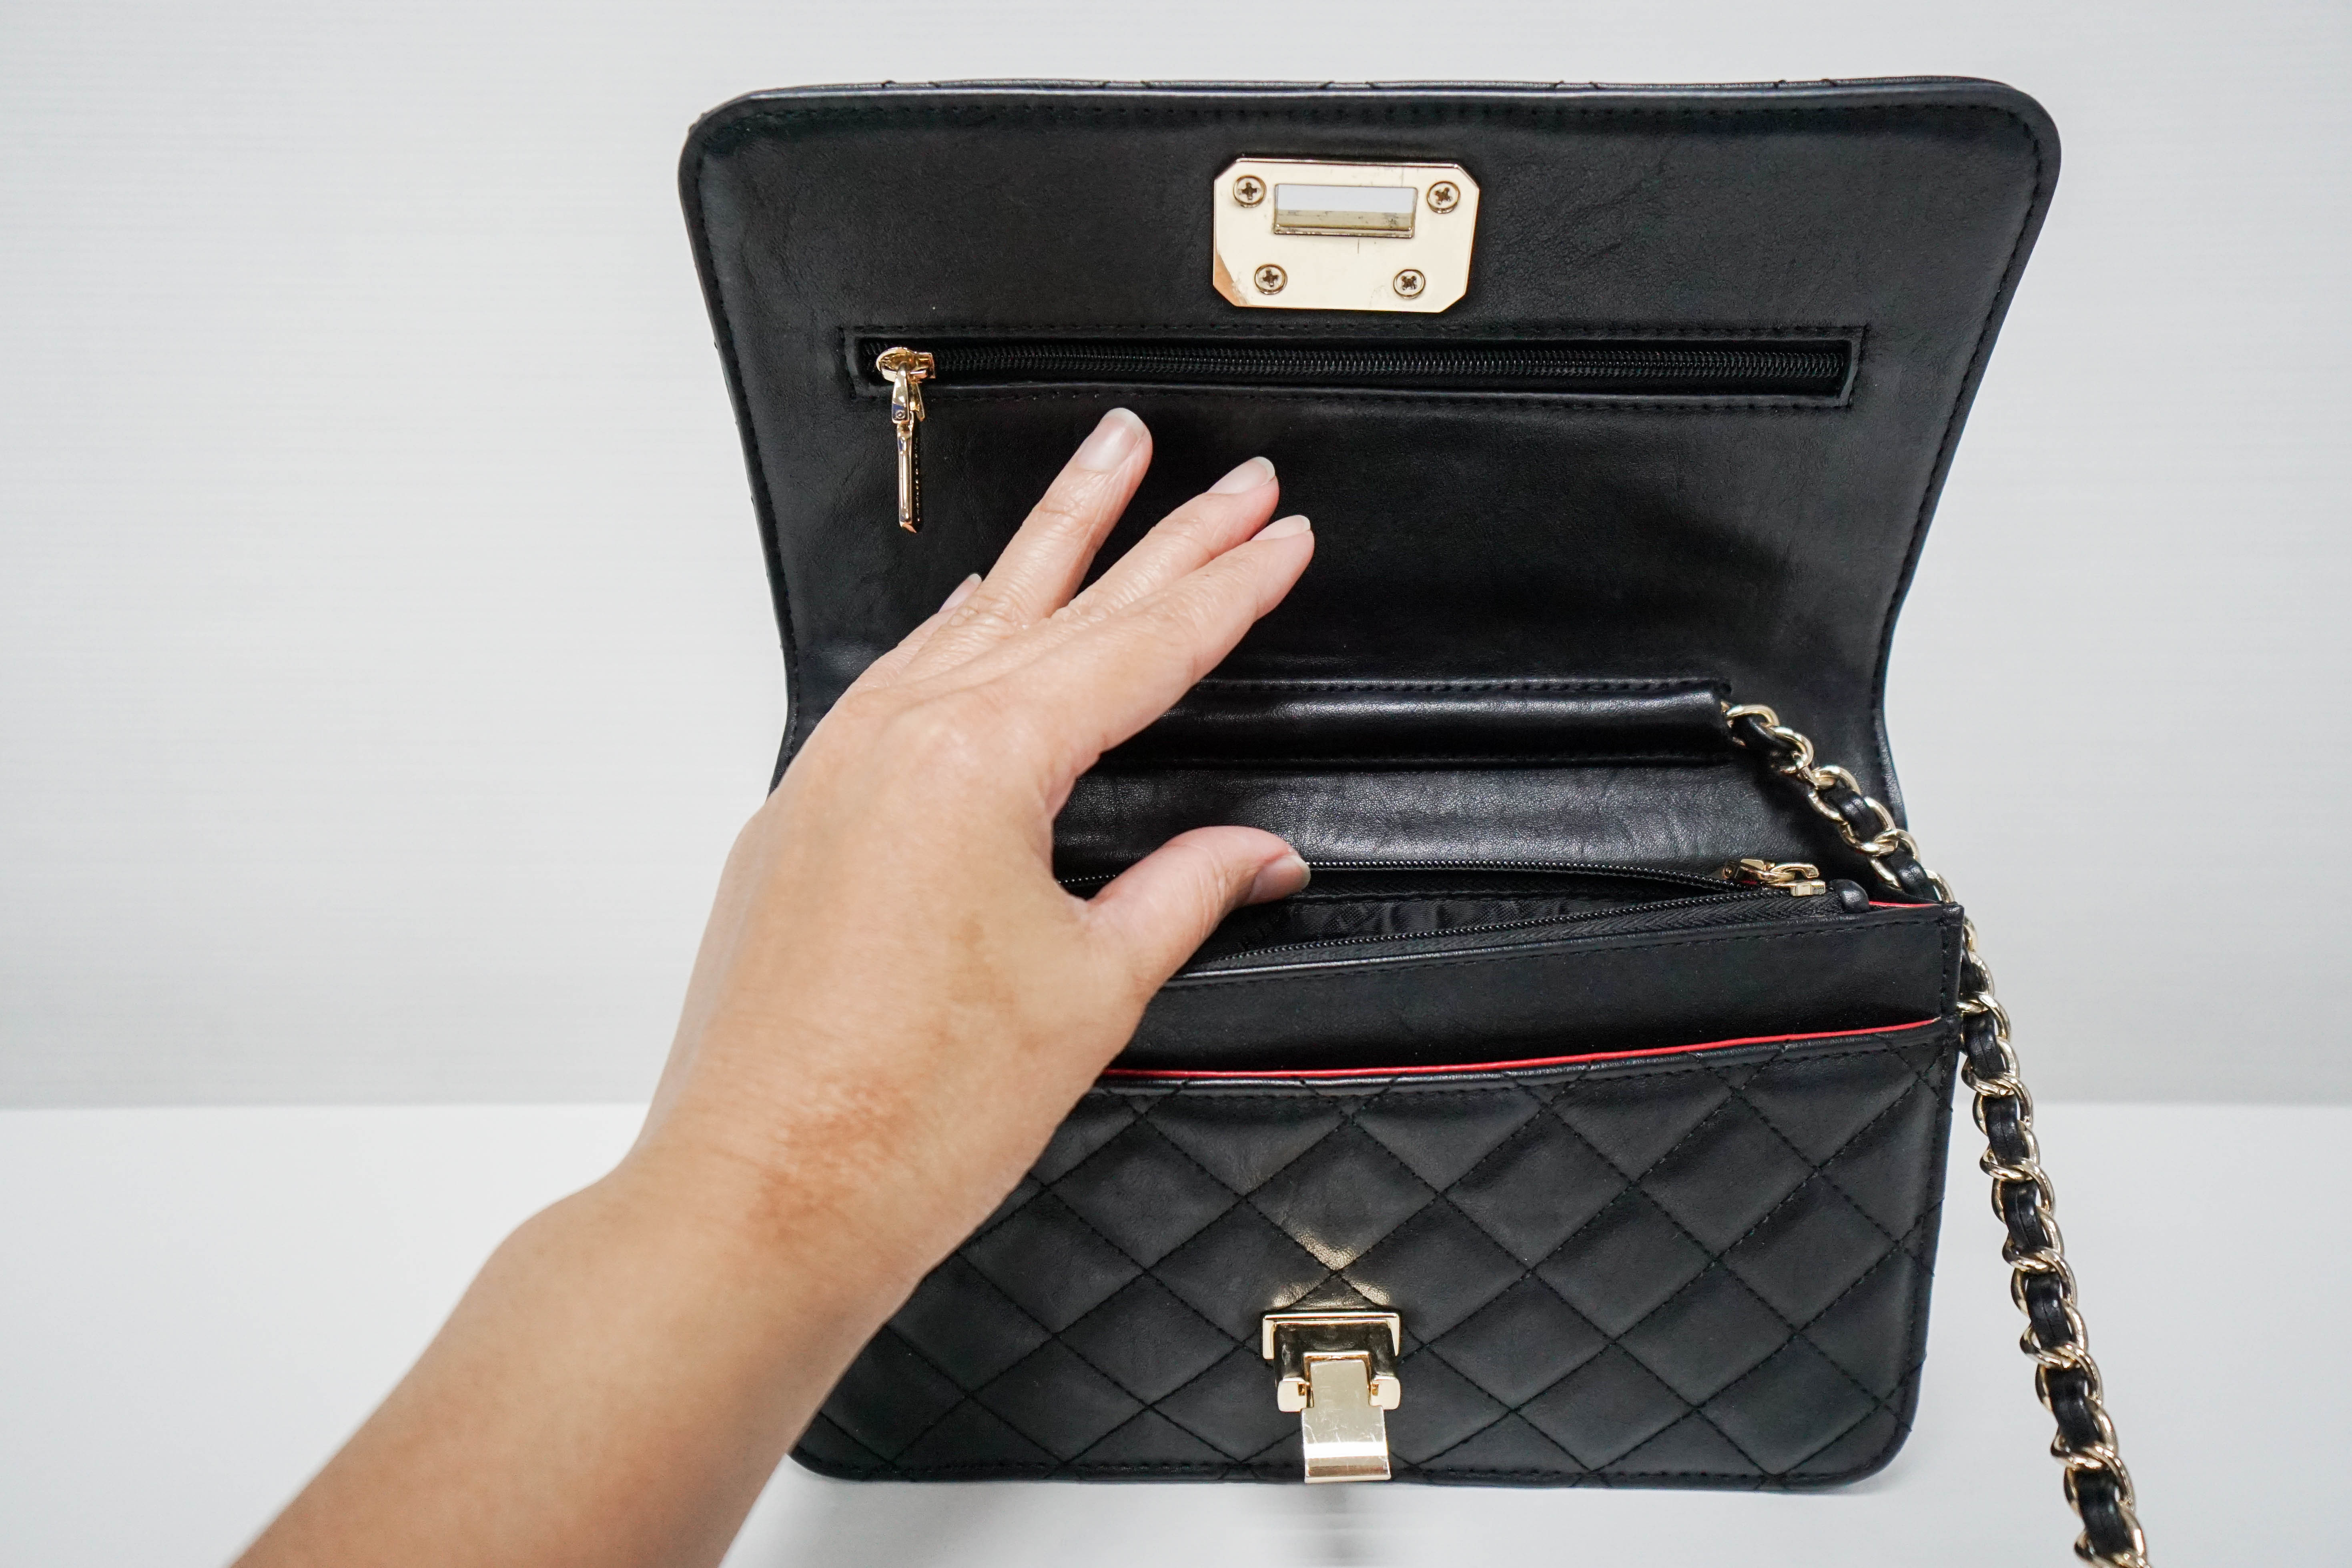 A hand holding a handbag open | Source: Shutterstock